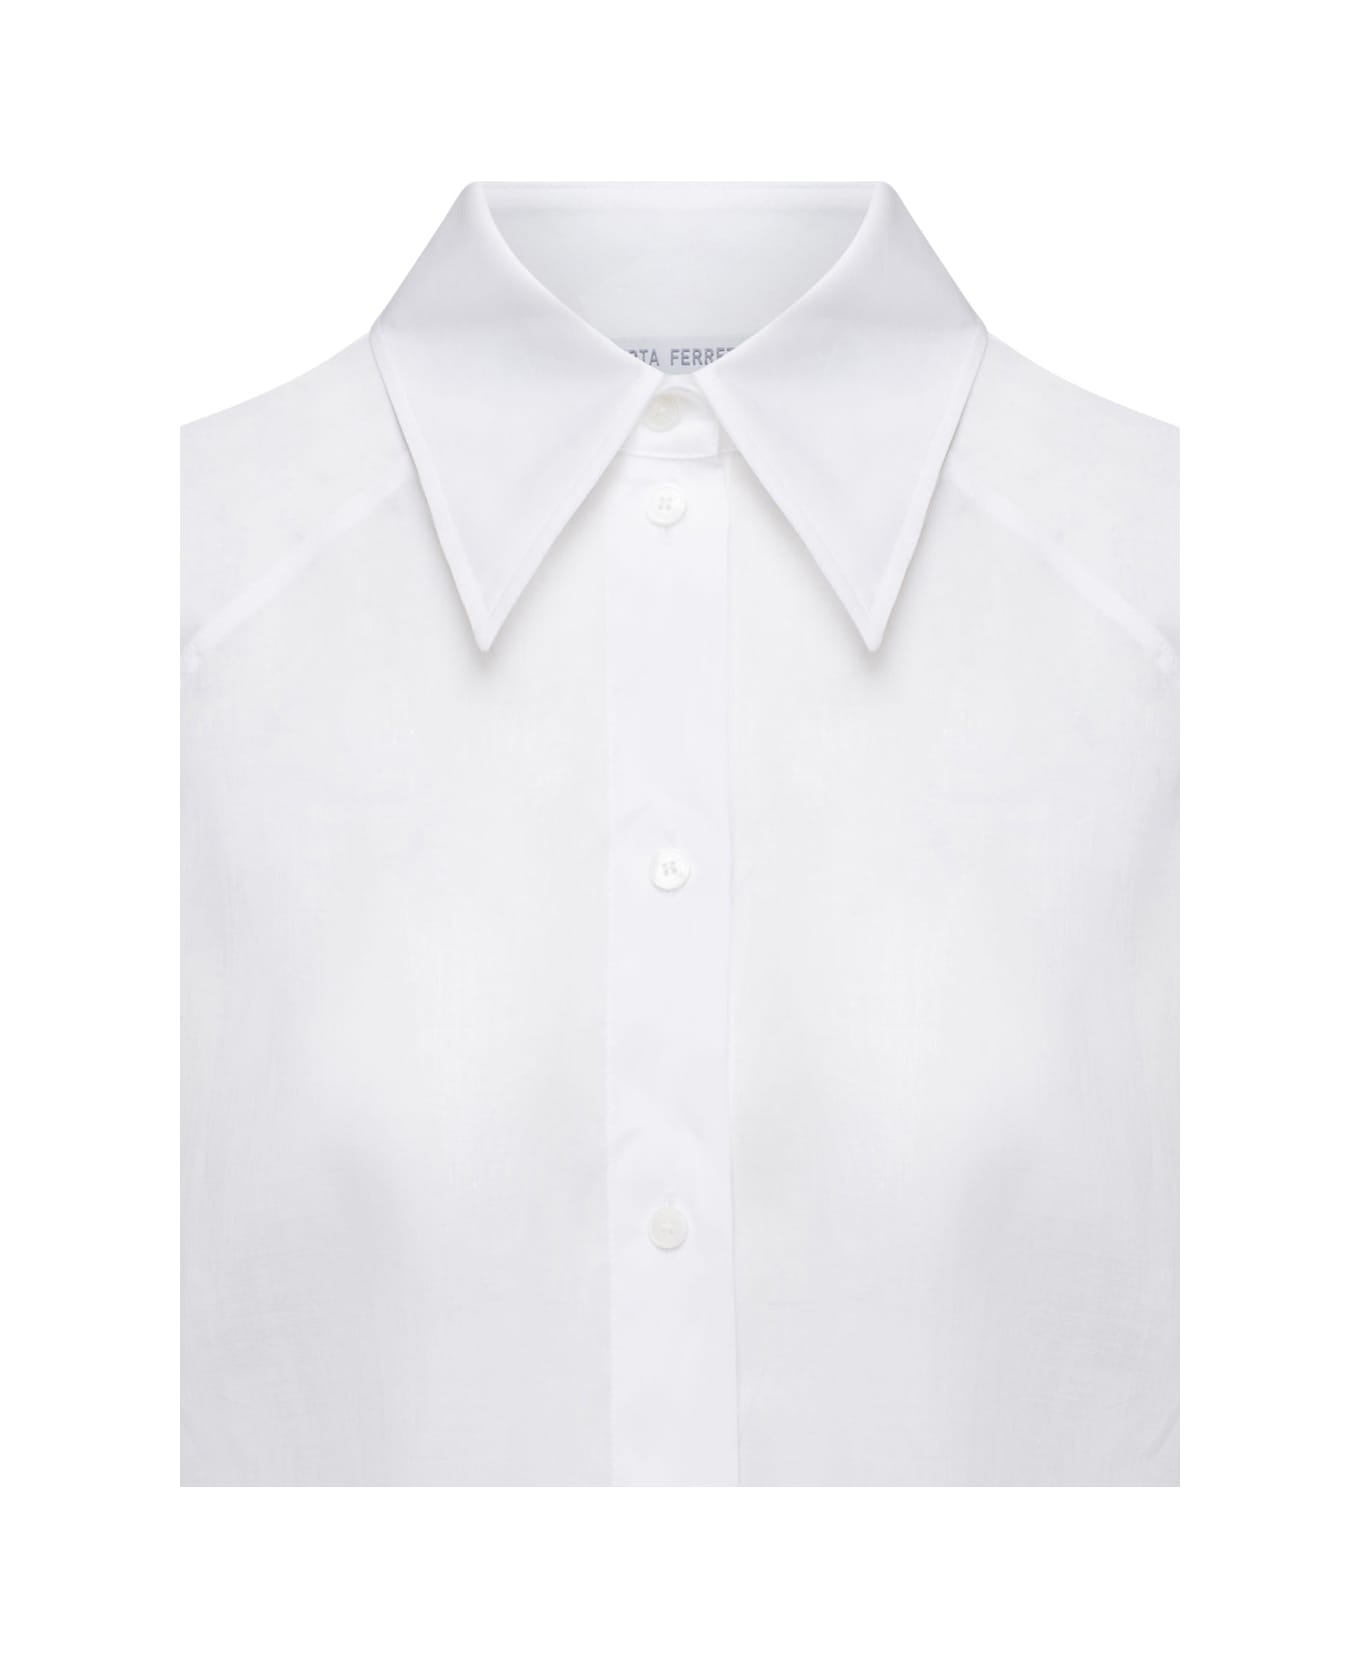 Alberta Ferretti White Maxi Shirt In Cotton Organza Woman - White シャツ